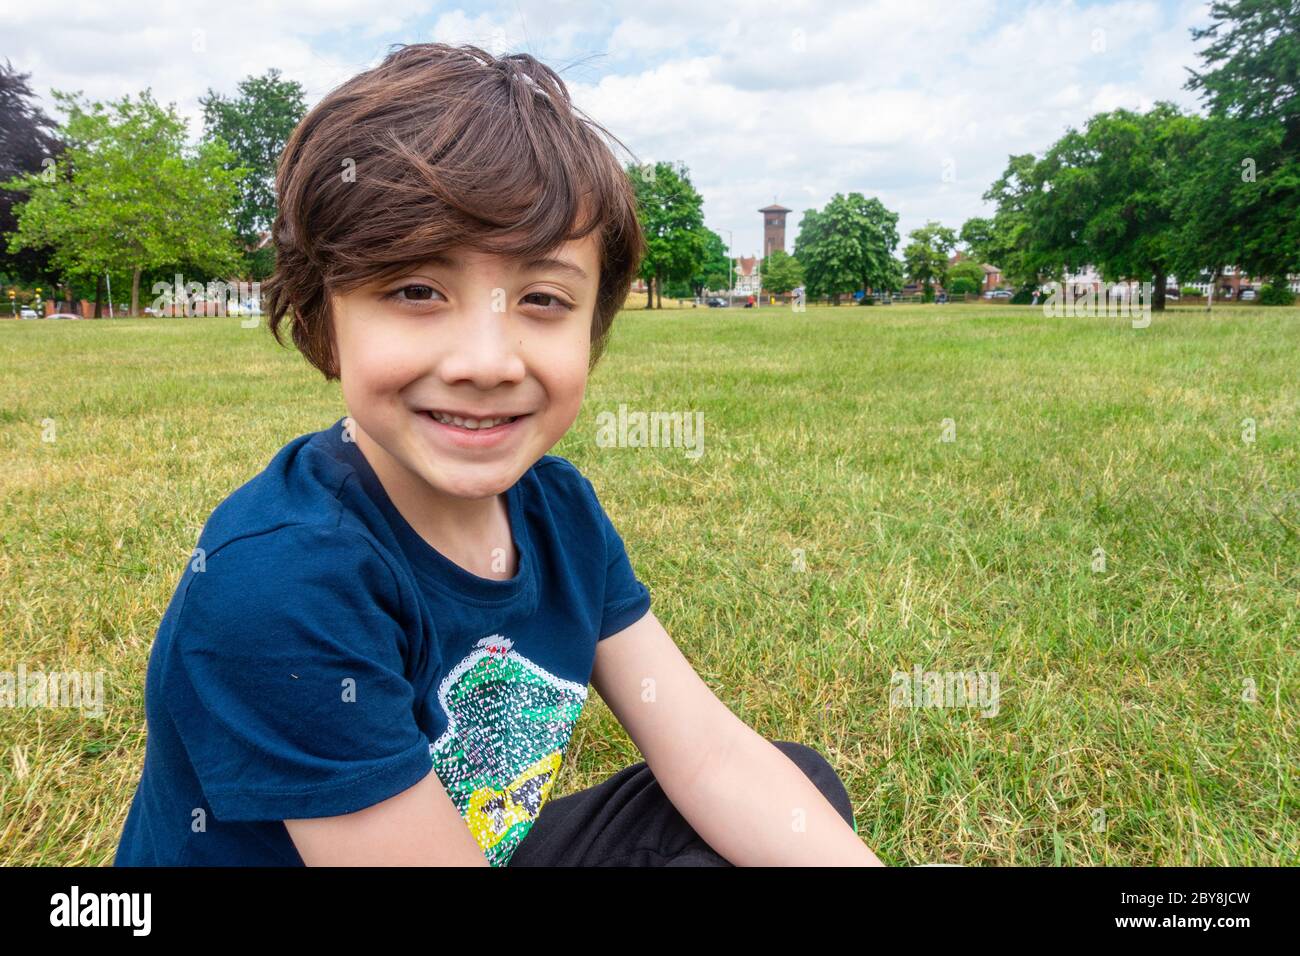 Ein kleiner Junge sitzt auf dem Boden im Park, lächelt und posiert für ein Porträt. Stockfoto